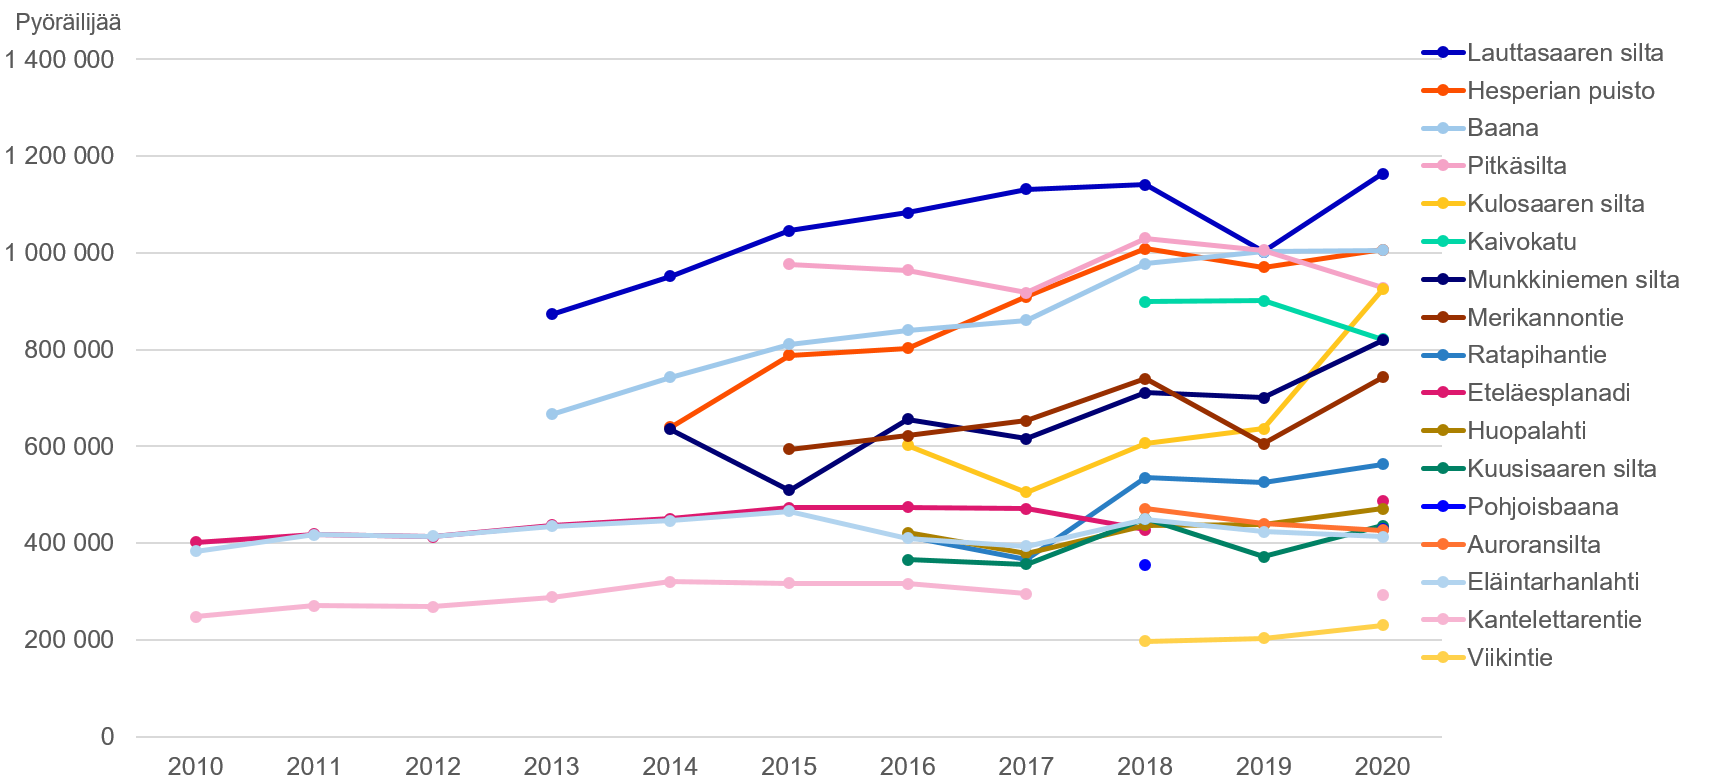 Pyöräliikenteen määrät konelaskentapisteissä 2010-2020